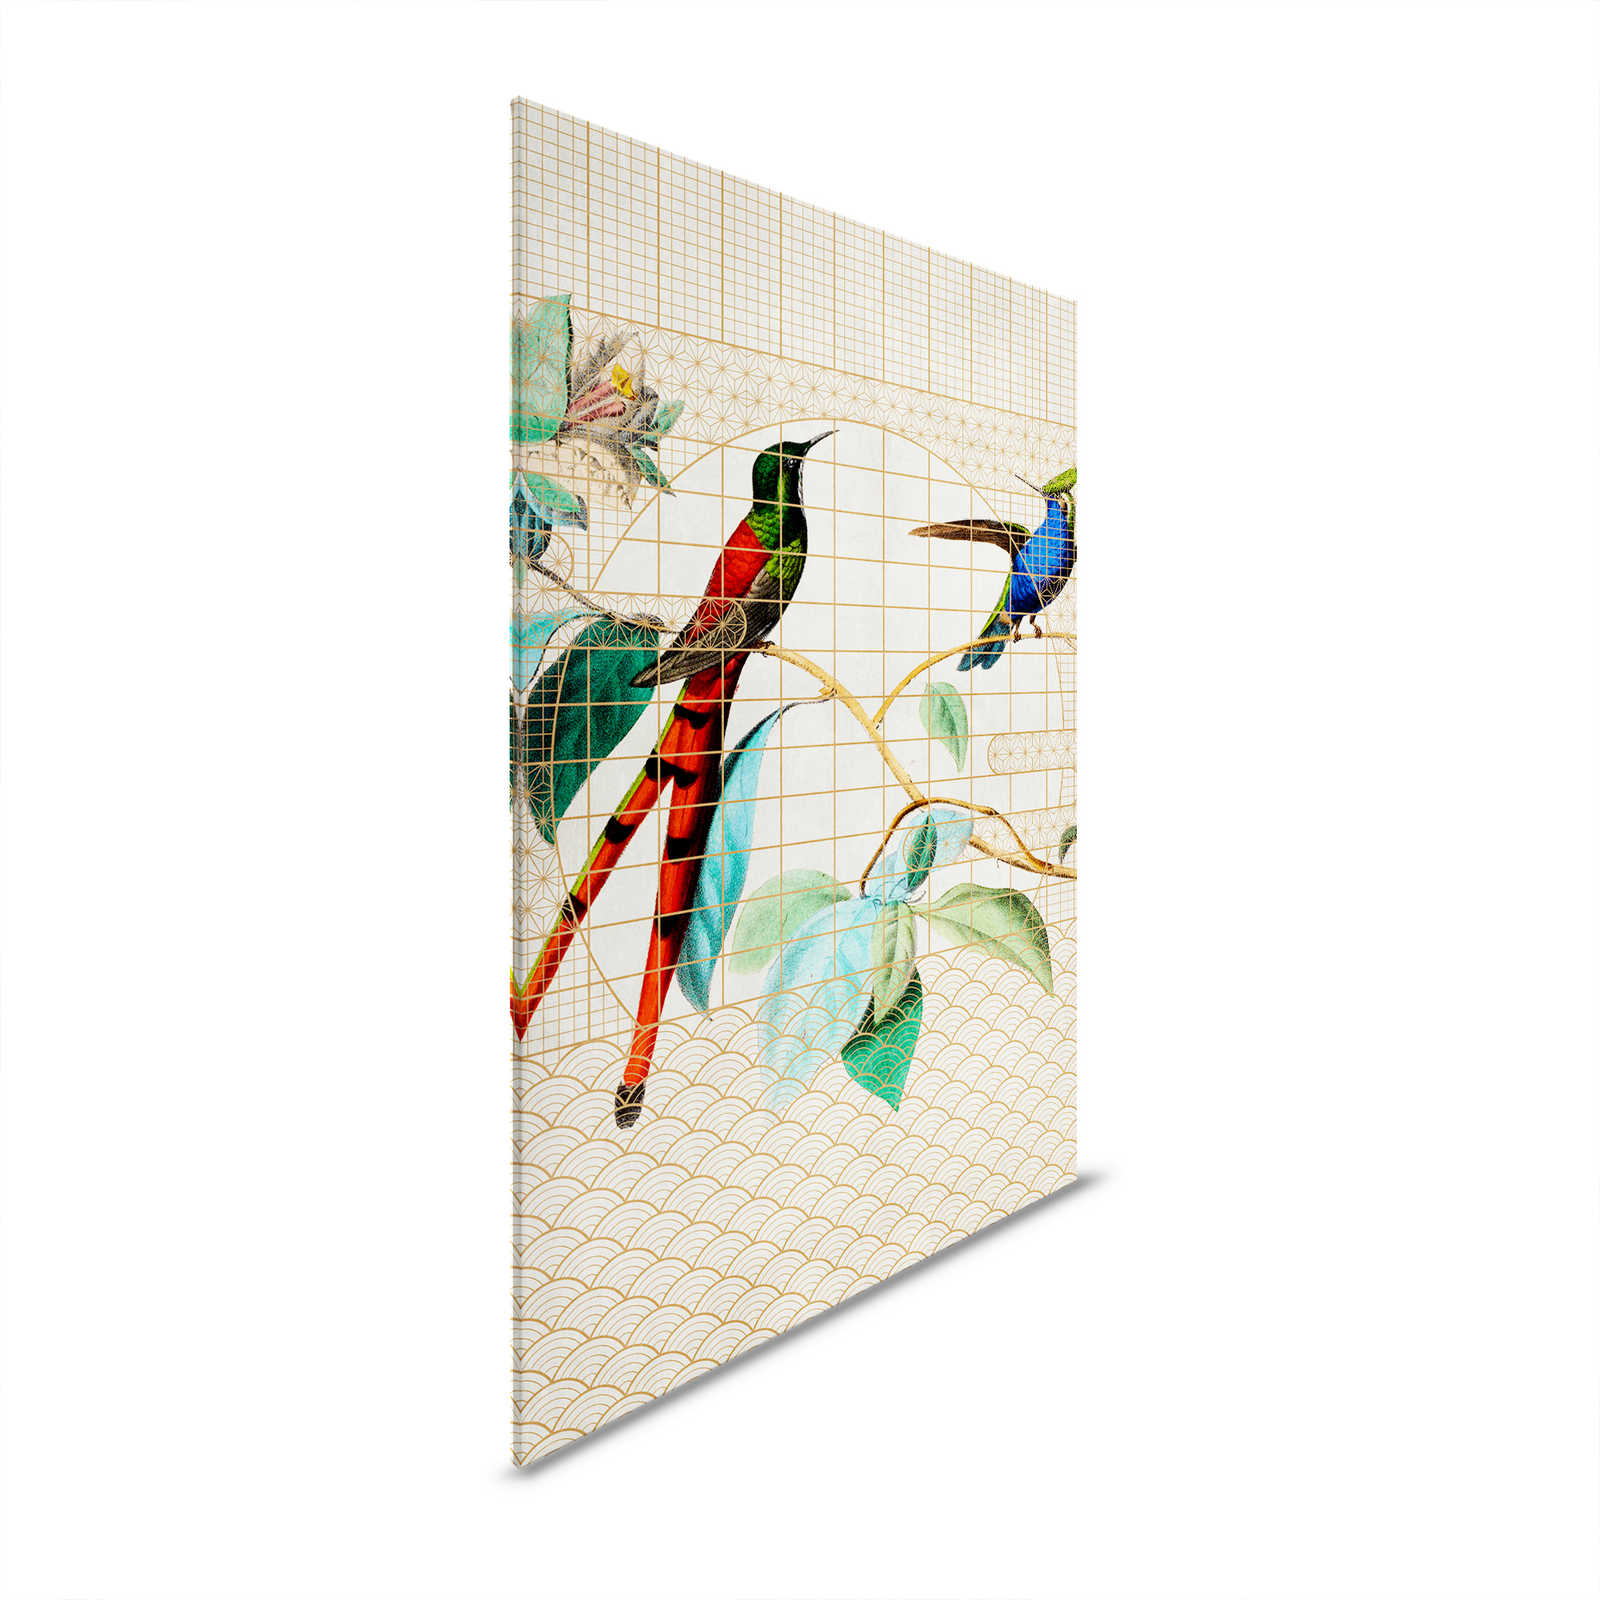 Pajarera 2 - Aves Cuadro en lienzo Pájaros cantores en una jaula dorada - 1,20 m x 0,80 m
